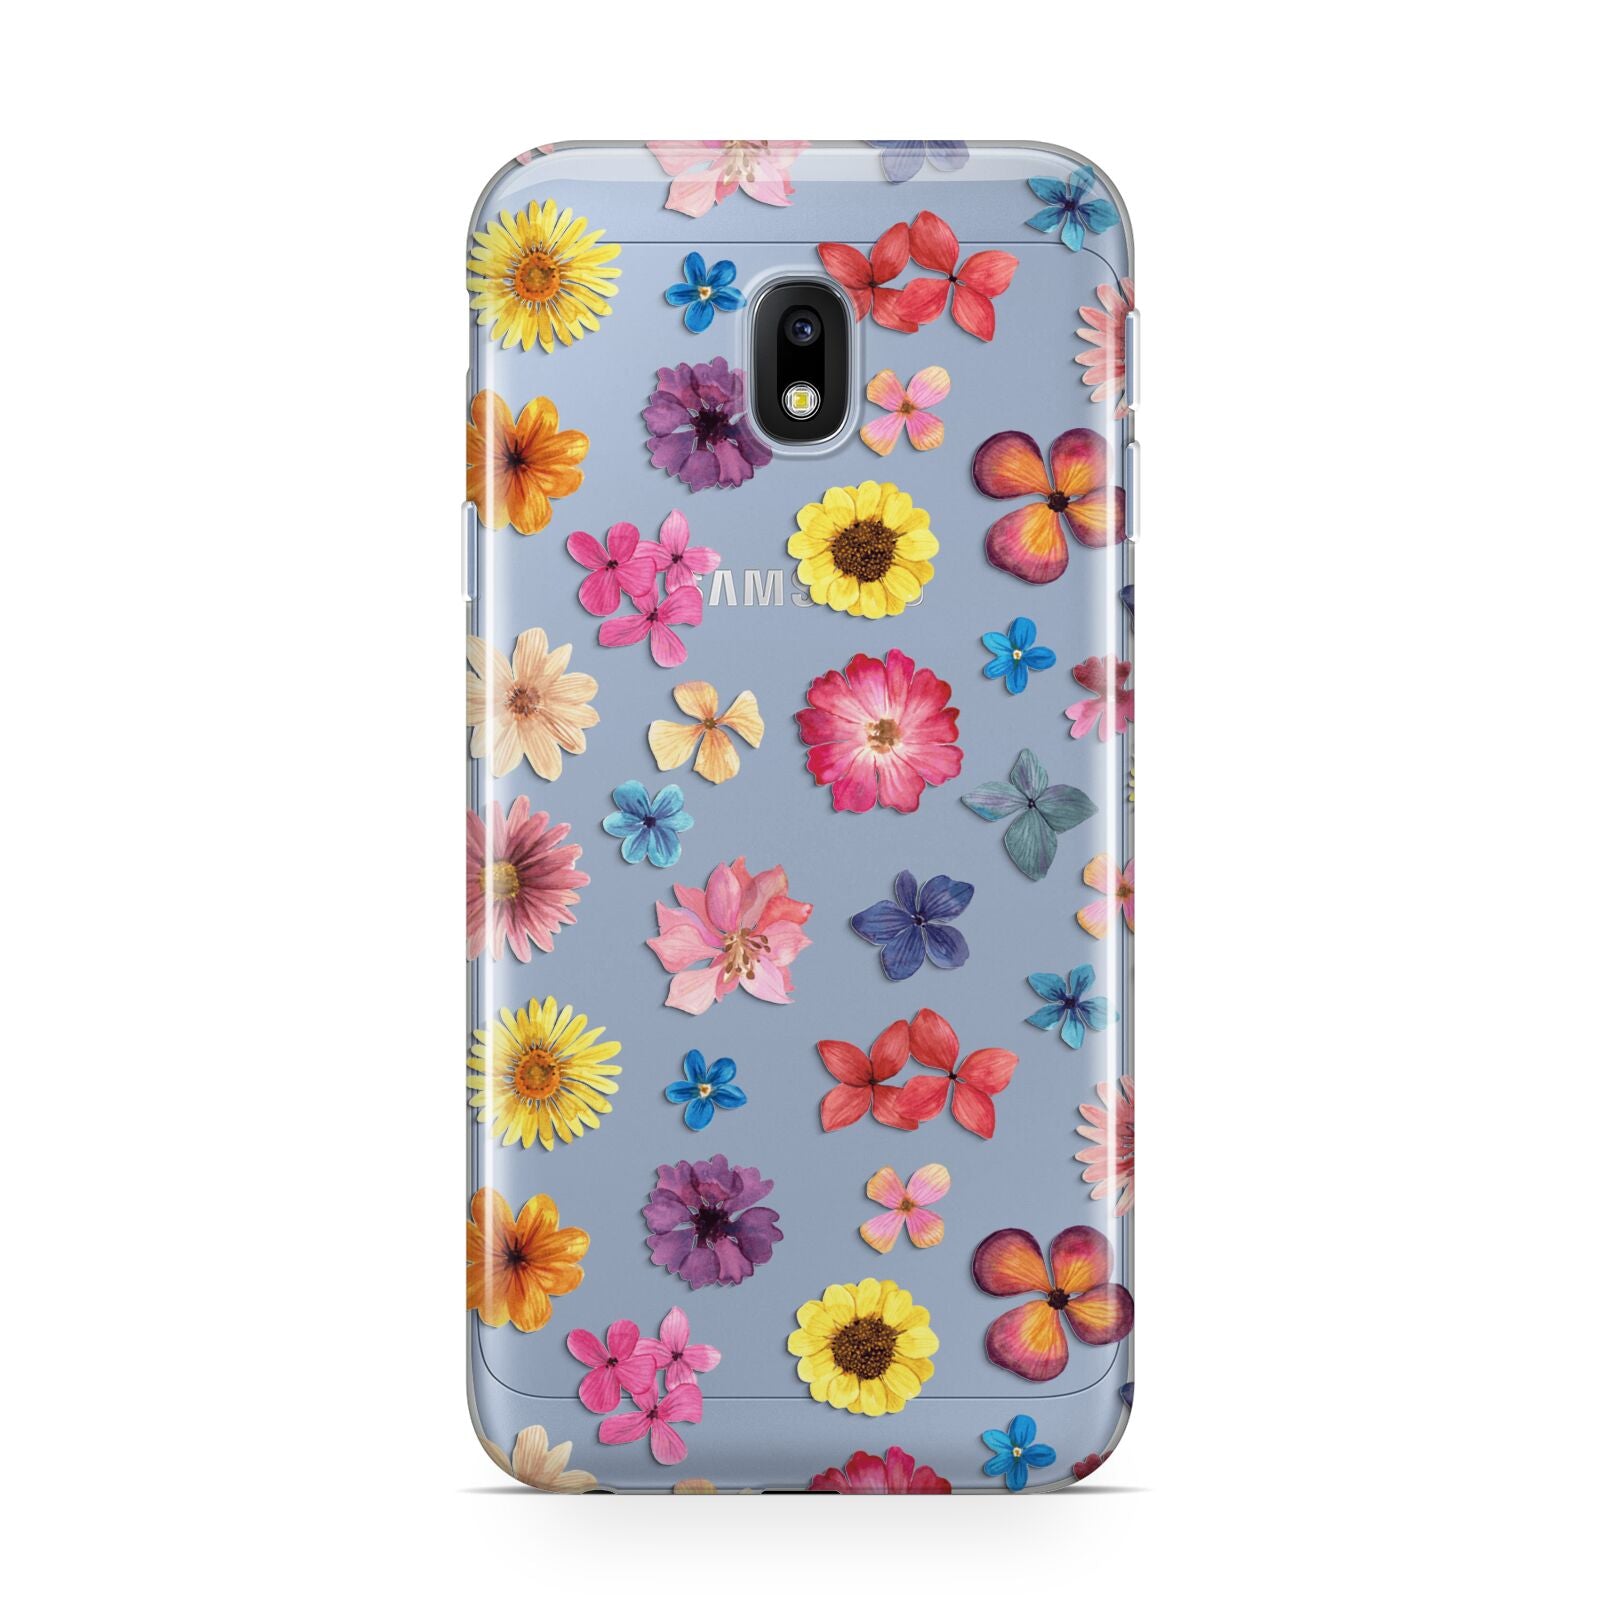 Summer Floral Samsung Galaxy J3 2017 Case